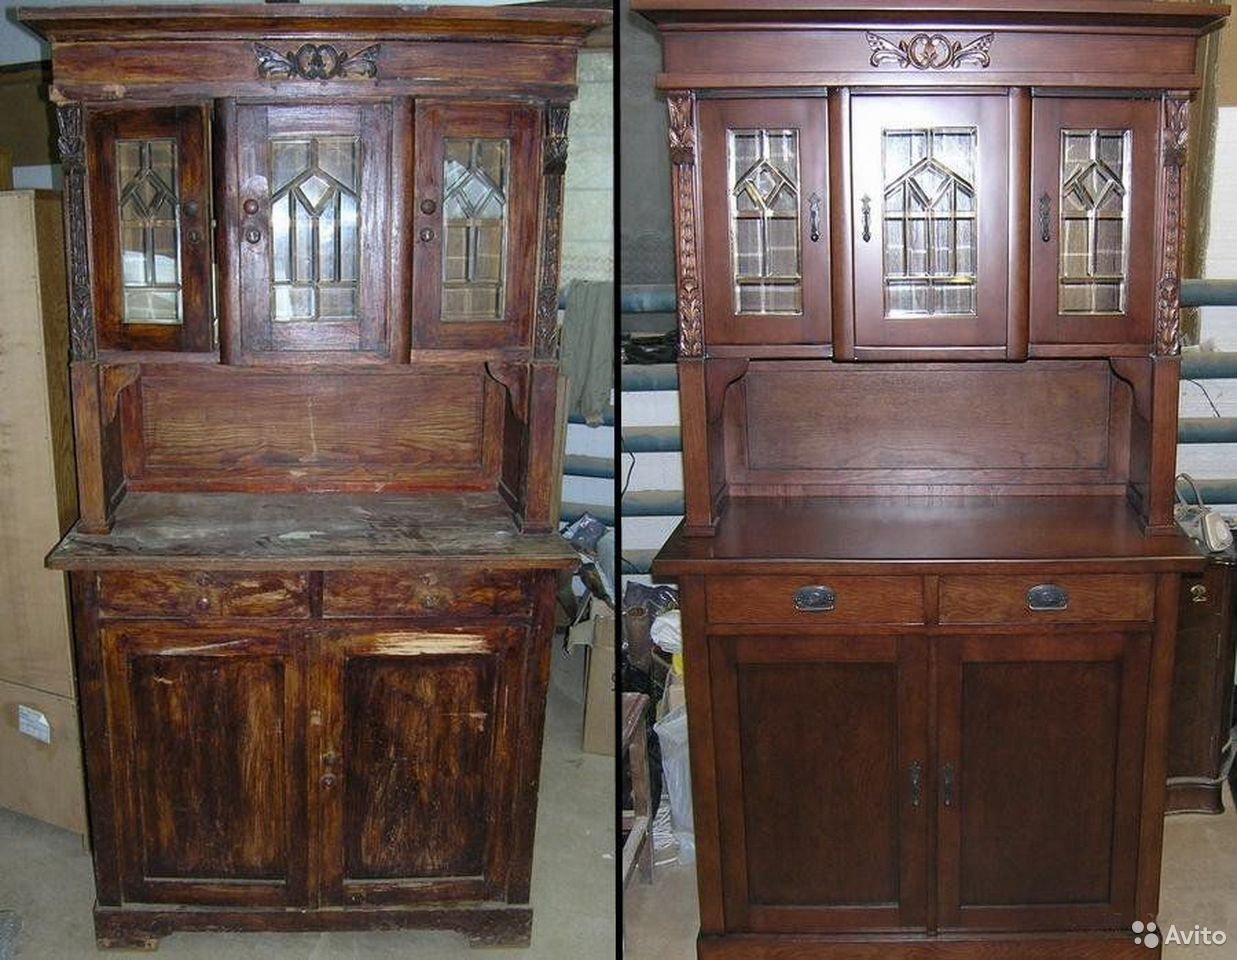 Ремонт реставрация мебели. Старая мебель. Реставрируем деревянную мебель. Старинные шкафы и Буфеты. Отреставрированная деревянная мебель.